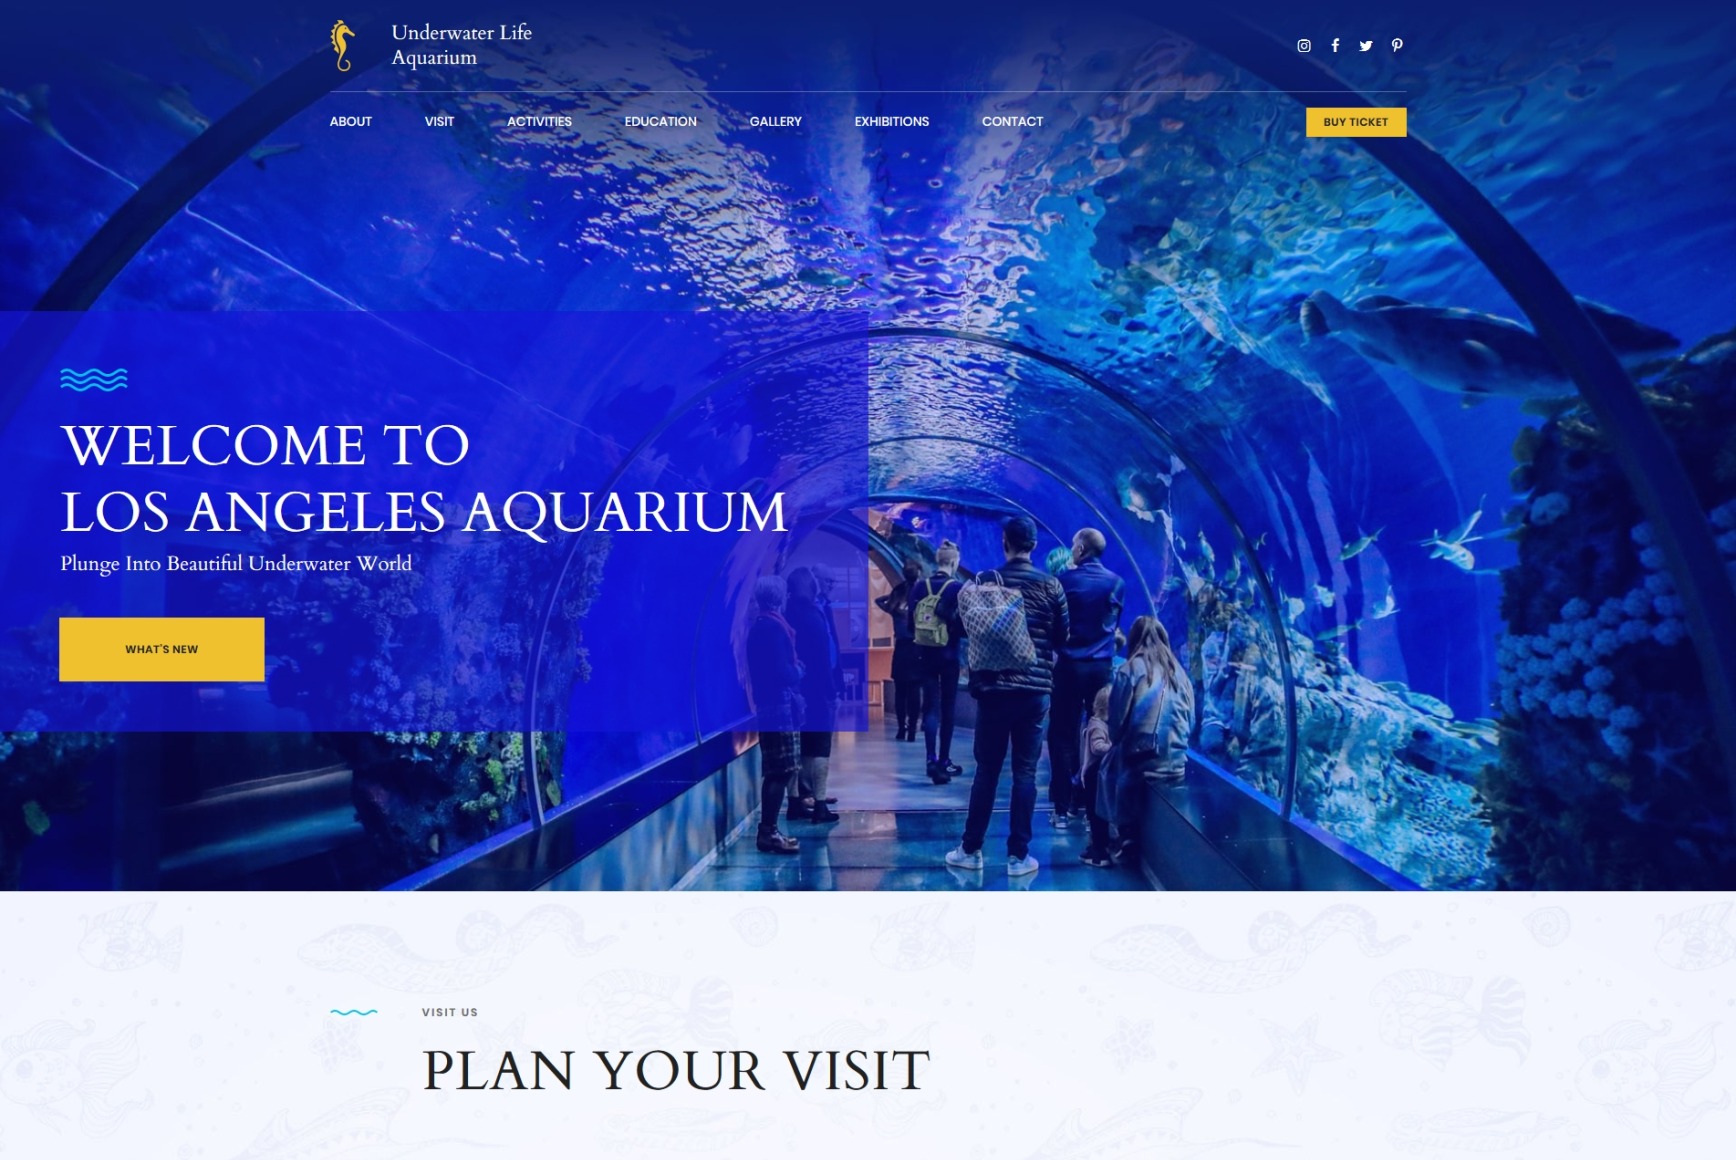 aquarium-website-template-for-public-aquarium-motocms